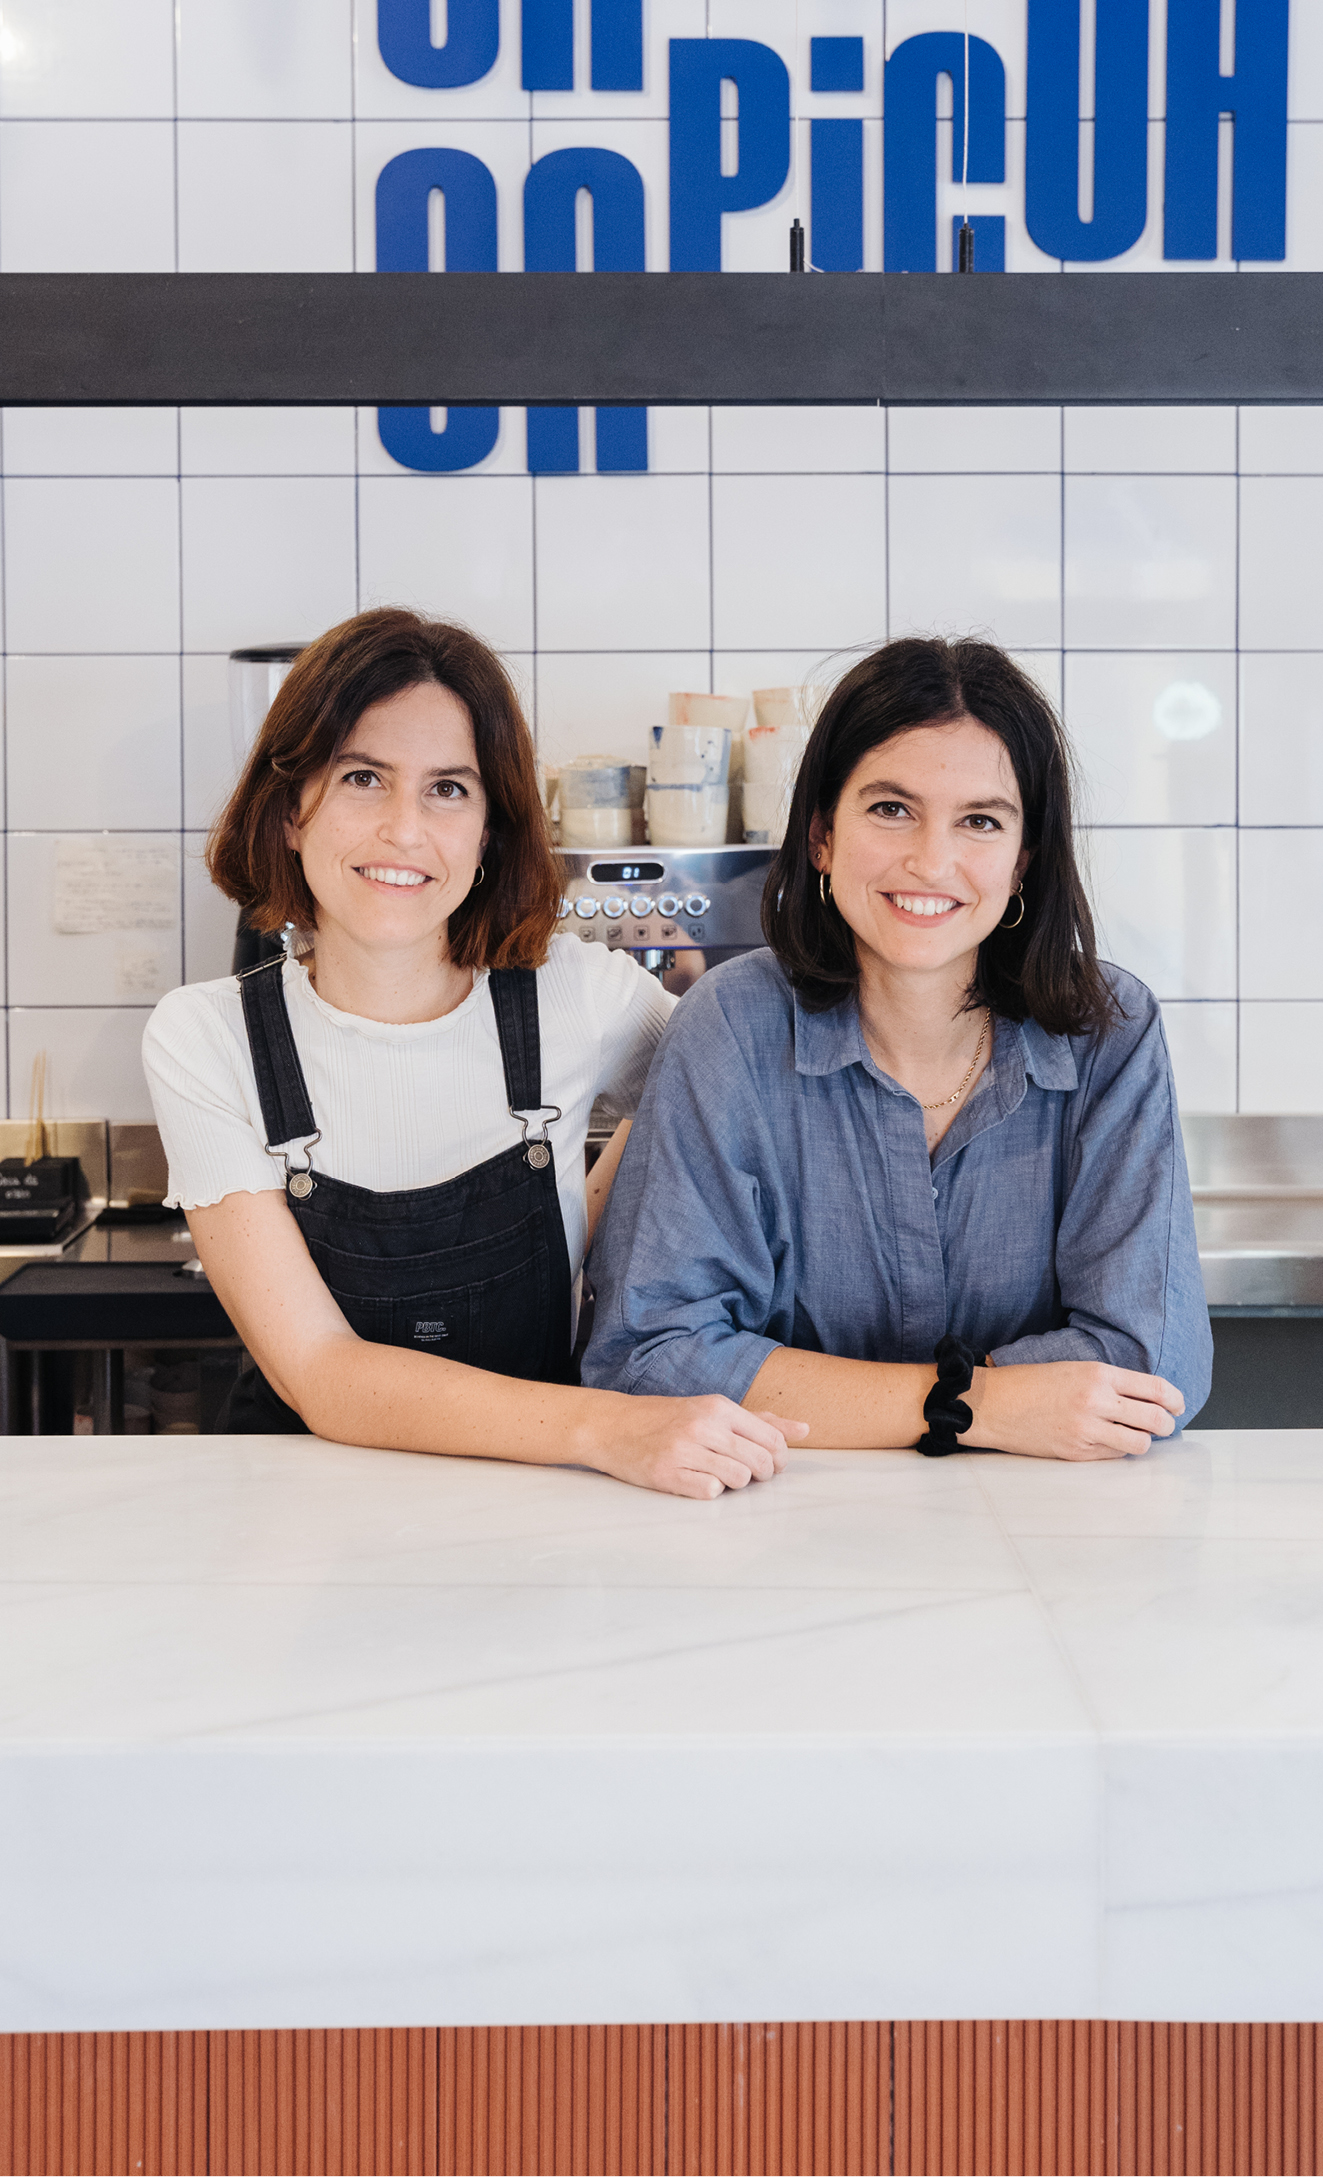 CAPICÚA: Twee tweelingen, beiden afgestudeerd in de rechten, eigenaren van een succesvol cateringbedrijf